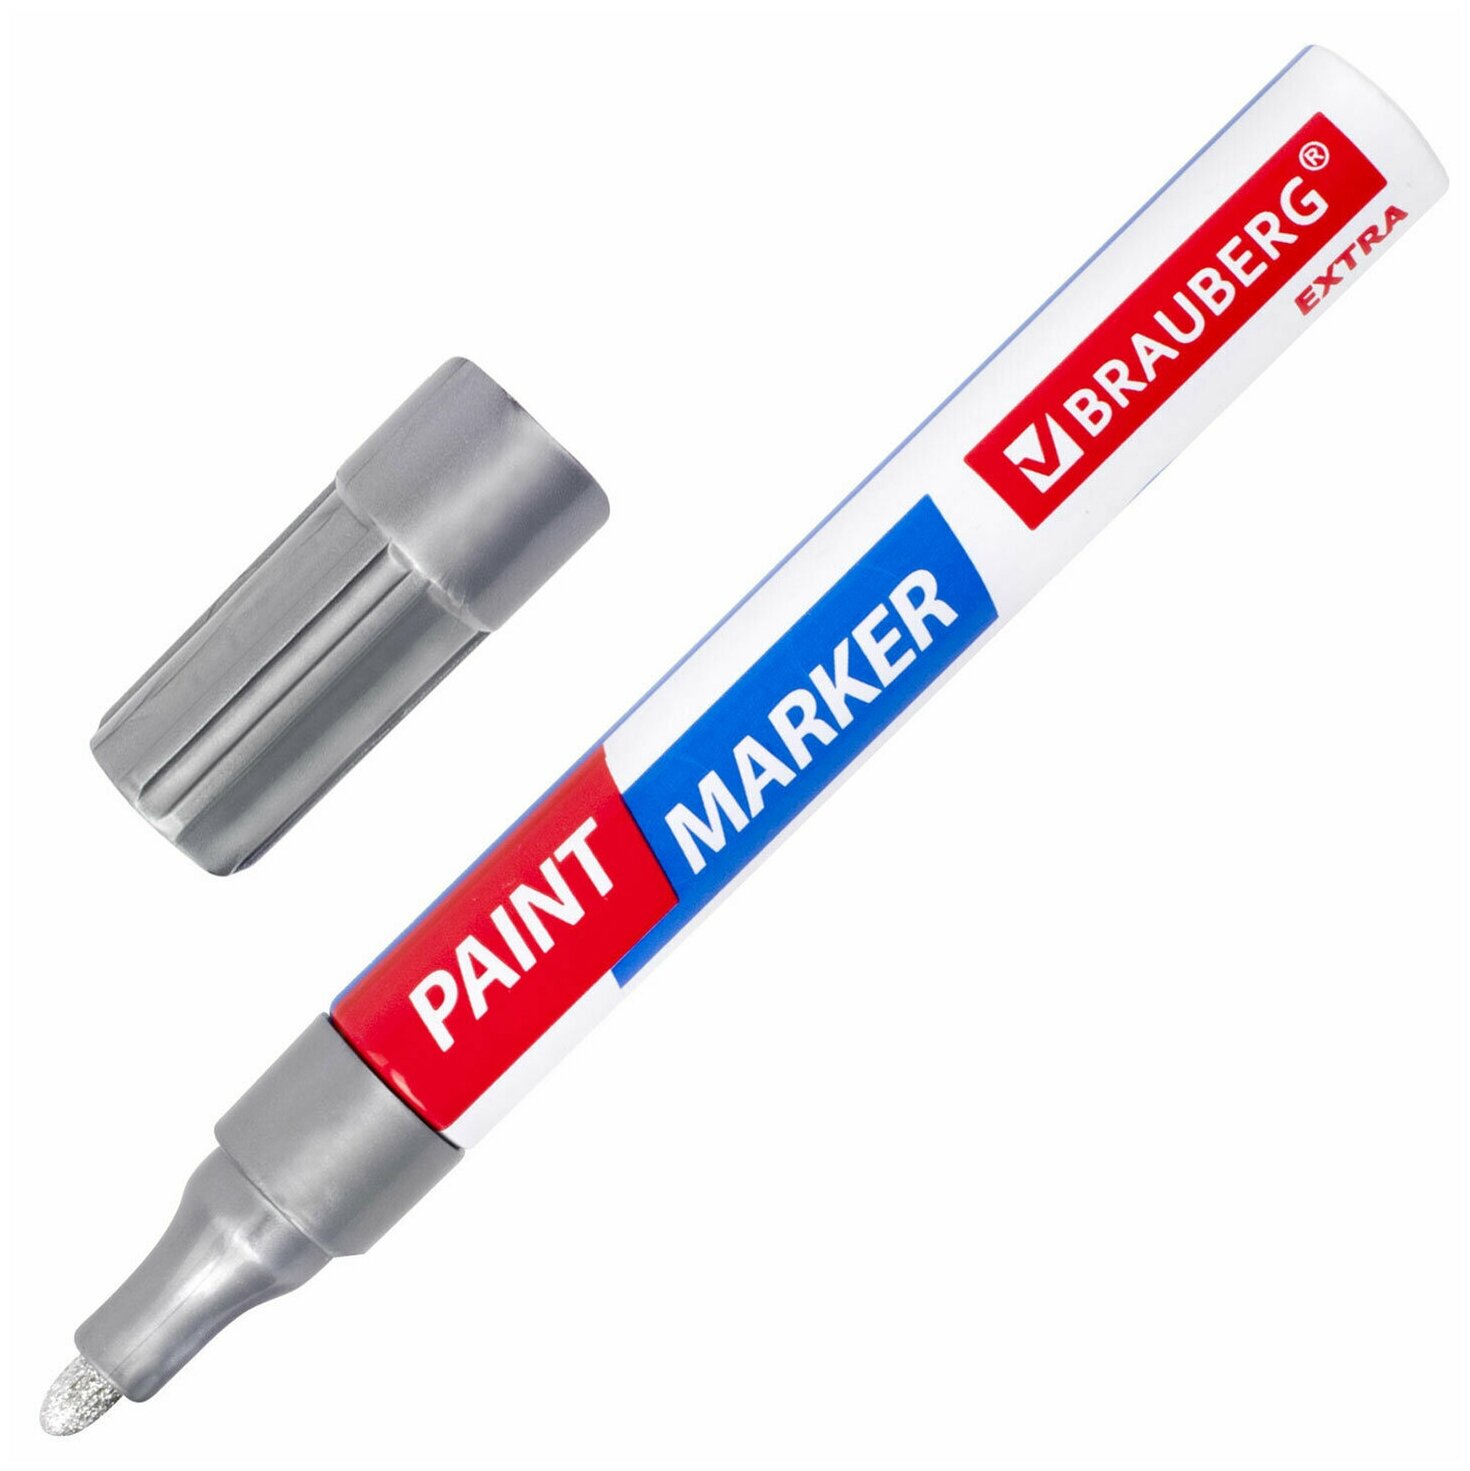 Маркер-краска лаковый EXTRA (paint marker) 4 мм серебряный усиленная нитро-основа BRAUBERG 151982 - 1 шт.